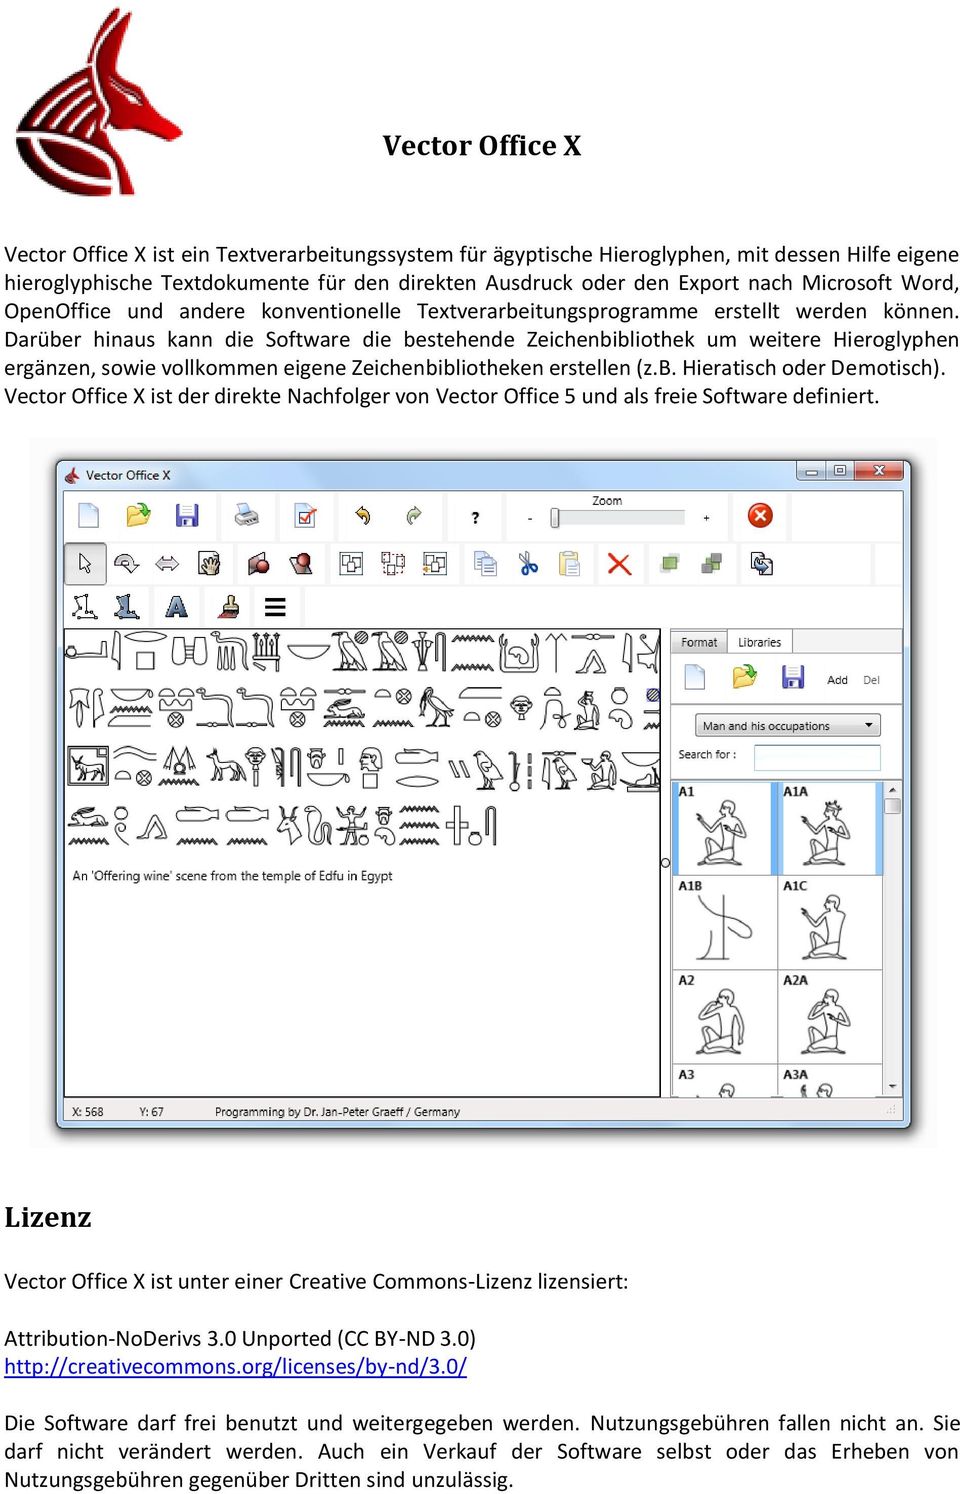 Darüber hinaus kann die Software die bestehende Zeichenbibliothek um weitere Hieroglyphen ergänzen, sowie vollkommen eigene Zeichenbibliotheken erstellen (z.b. Hieratisch oder Demotisch).